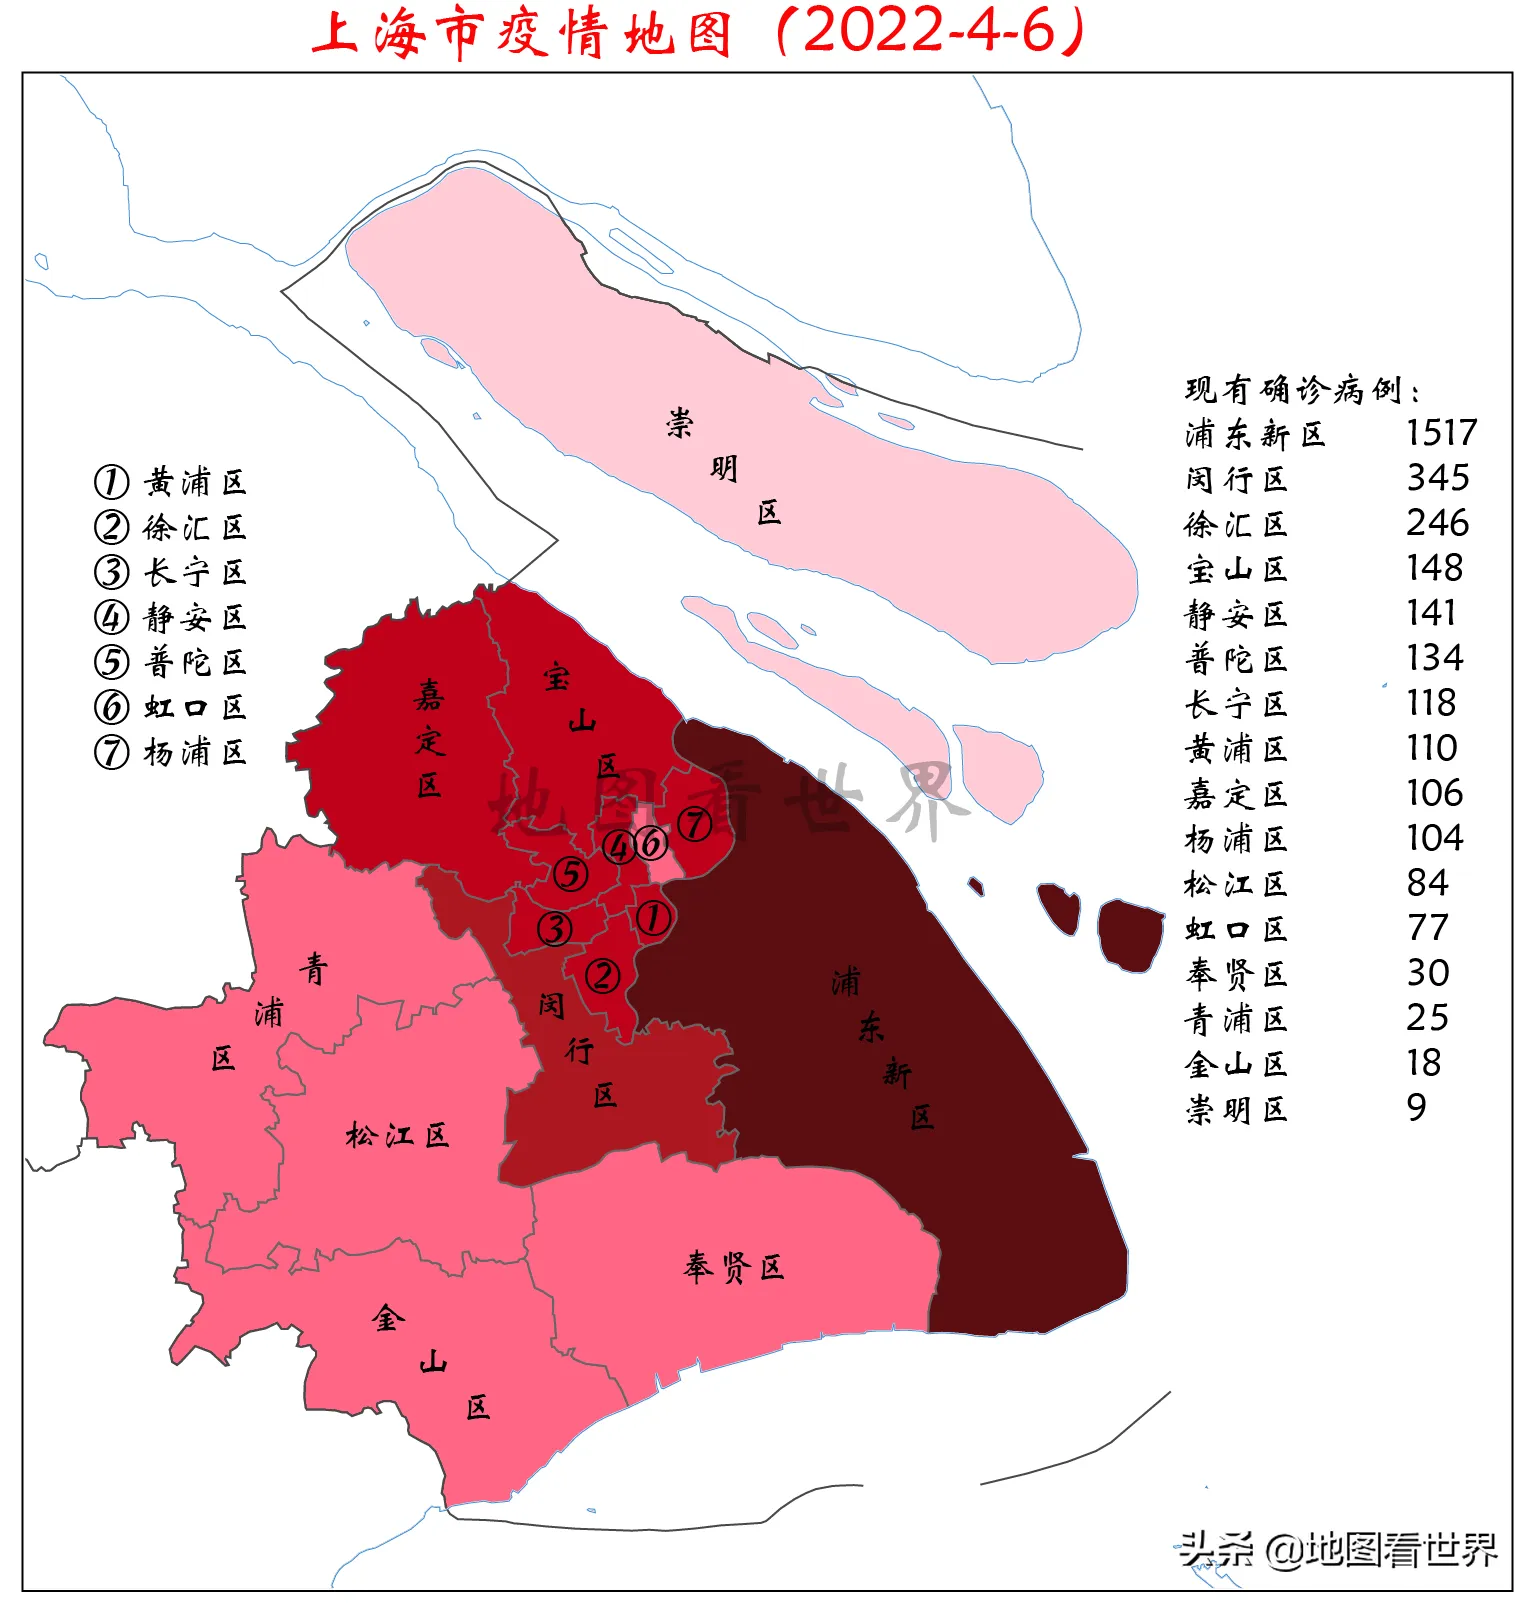 上海疫情地图 上海风险地区最新划分 上海新冠分布图 实时